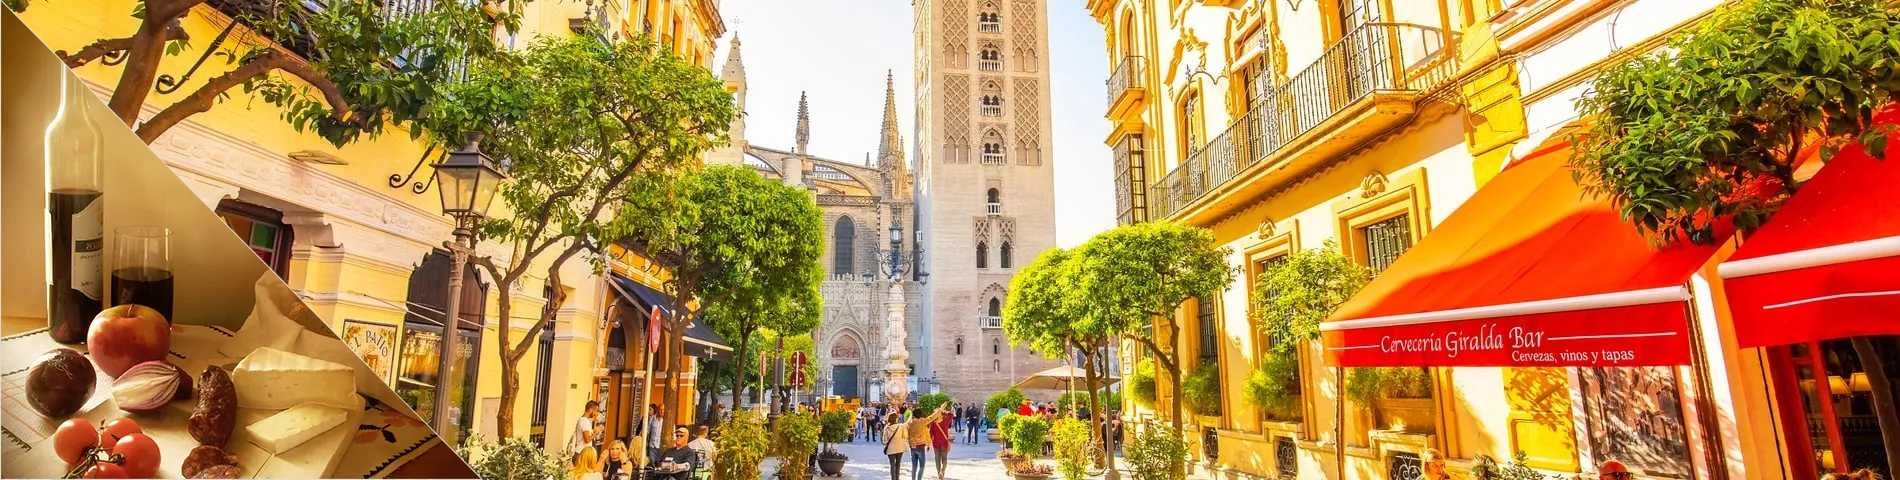 Sevilla - Spanska & kultur